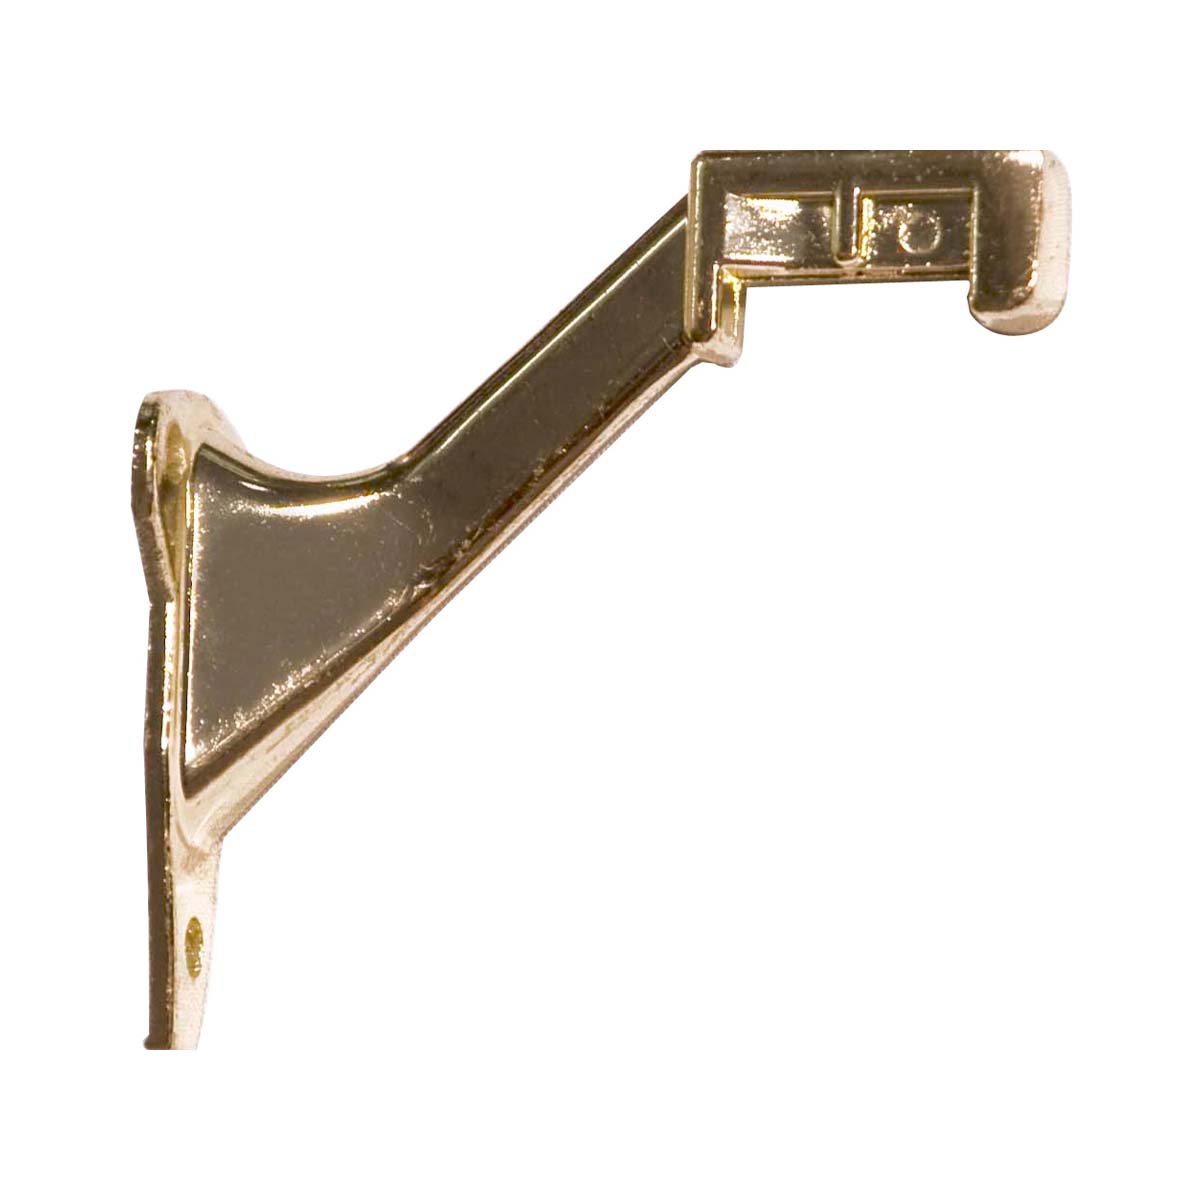 Handrail Brackets - Handrail Bracket - Handrail Bracket - Polished Brass